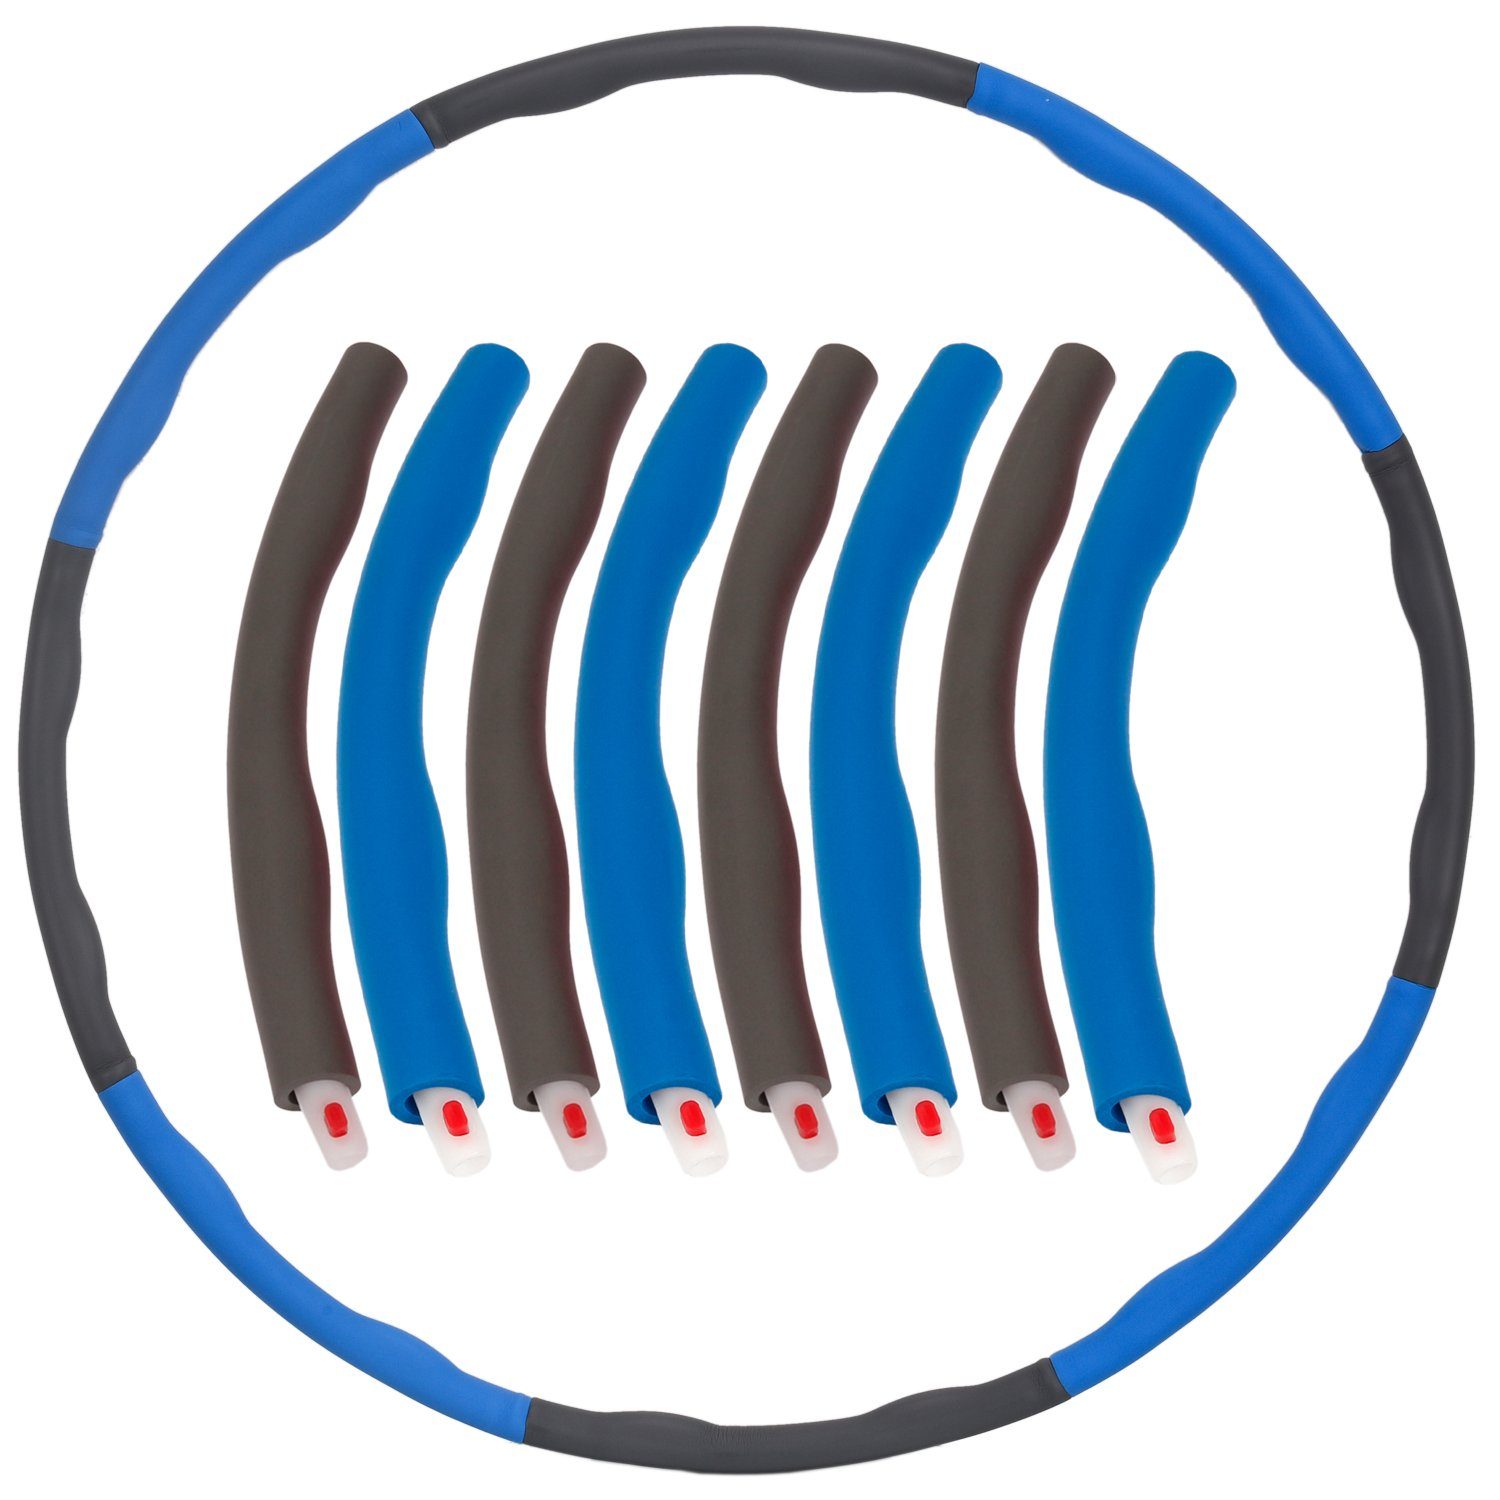 FunTomia Hula-Hoop-Reifen Anfänger zum Fitness steckbaren Training, Hoola Fortgeschrittene + 6-8 mit Hullahub Hop HUP für Bauchmuskeln zum Hulla der Hula Abnehmen Blau-Grau Soft-Elementen, Reifen Hoop Trainieren Erwachsene für